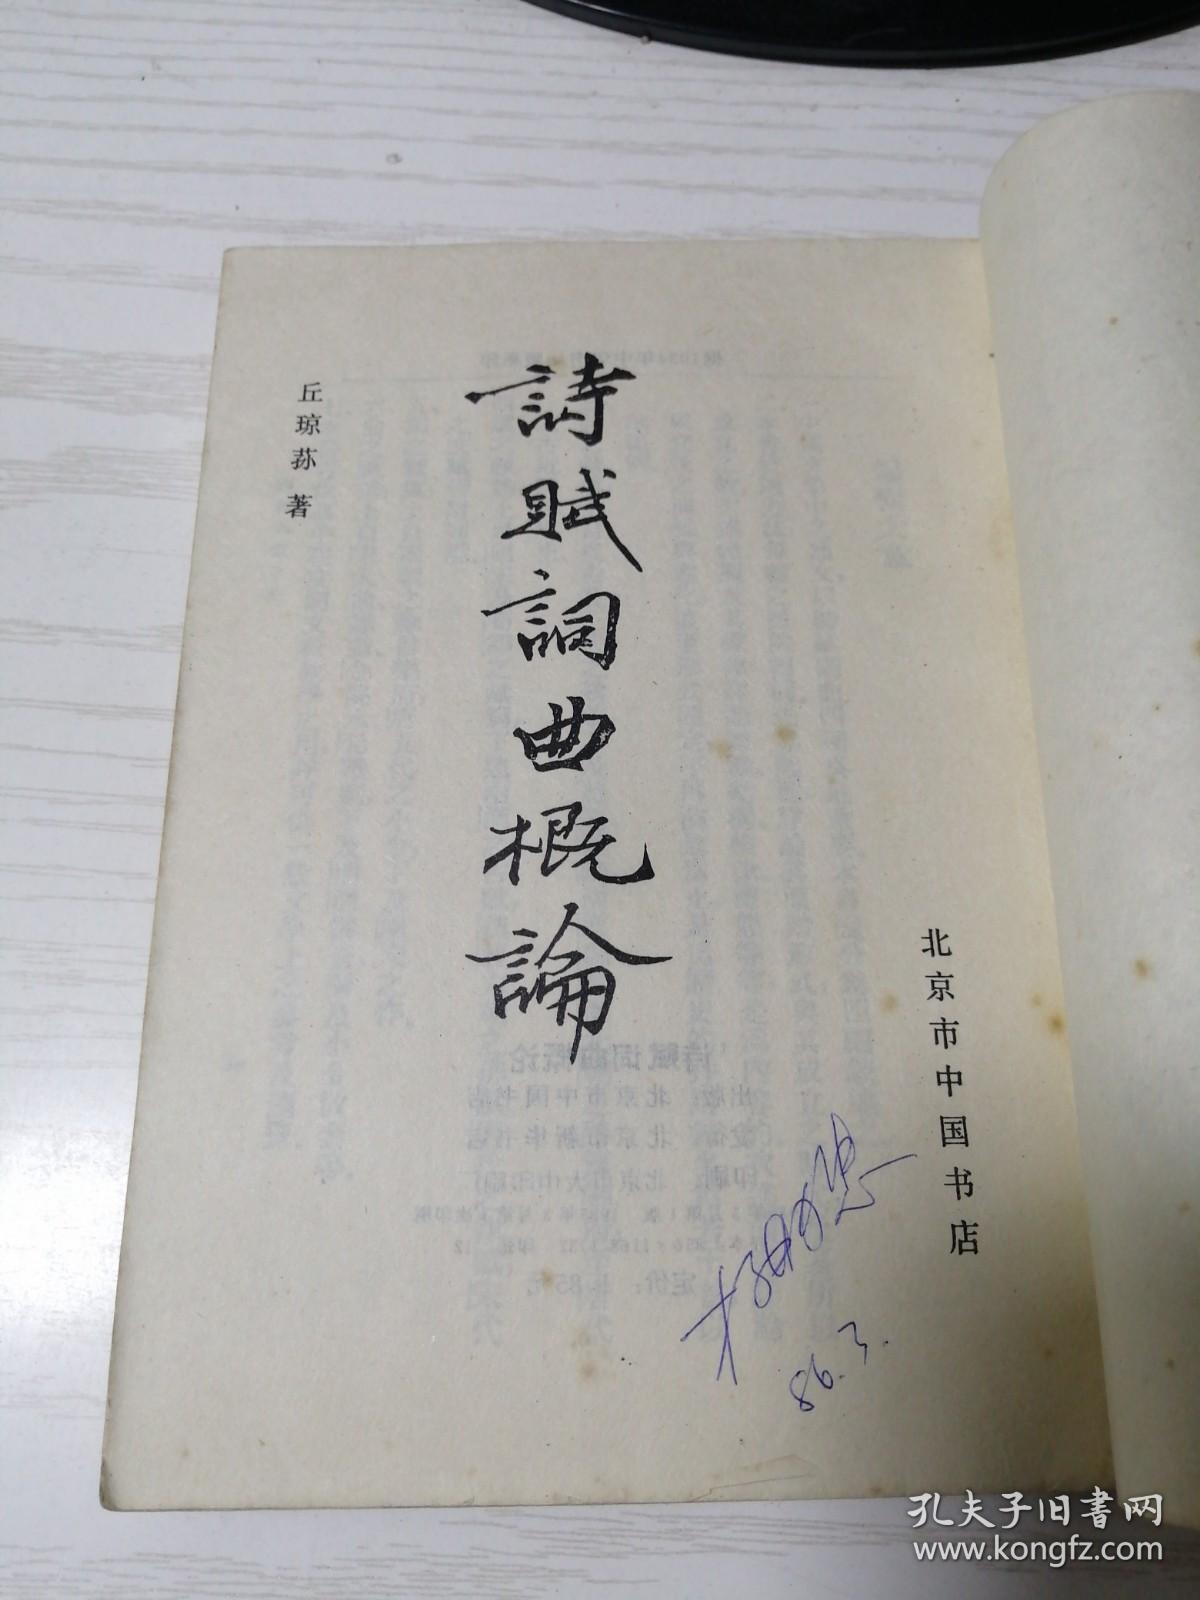 诗赋词曲概论  景印中华书局1934年版 无封面